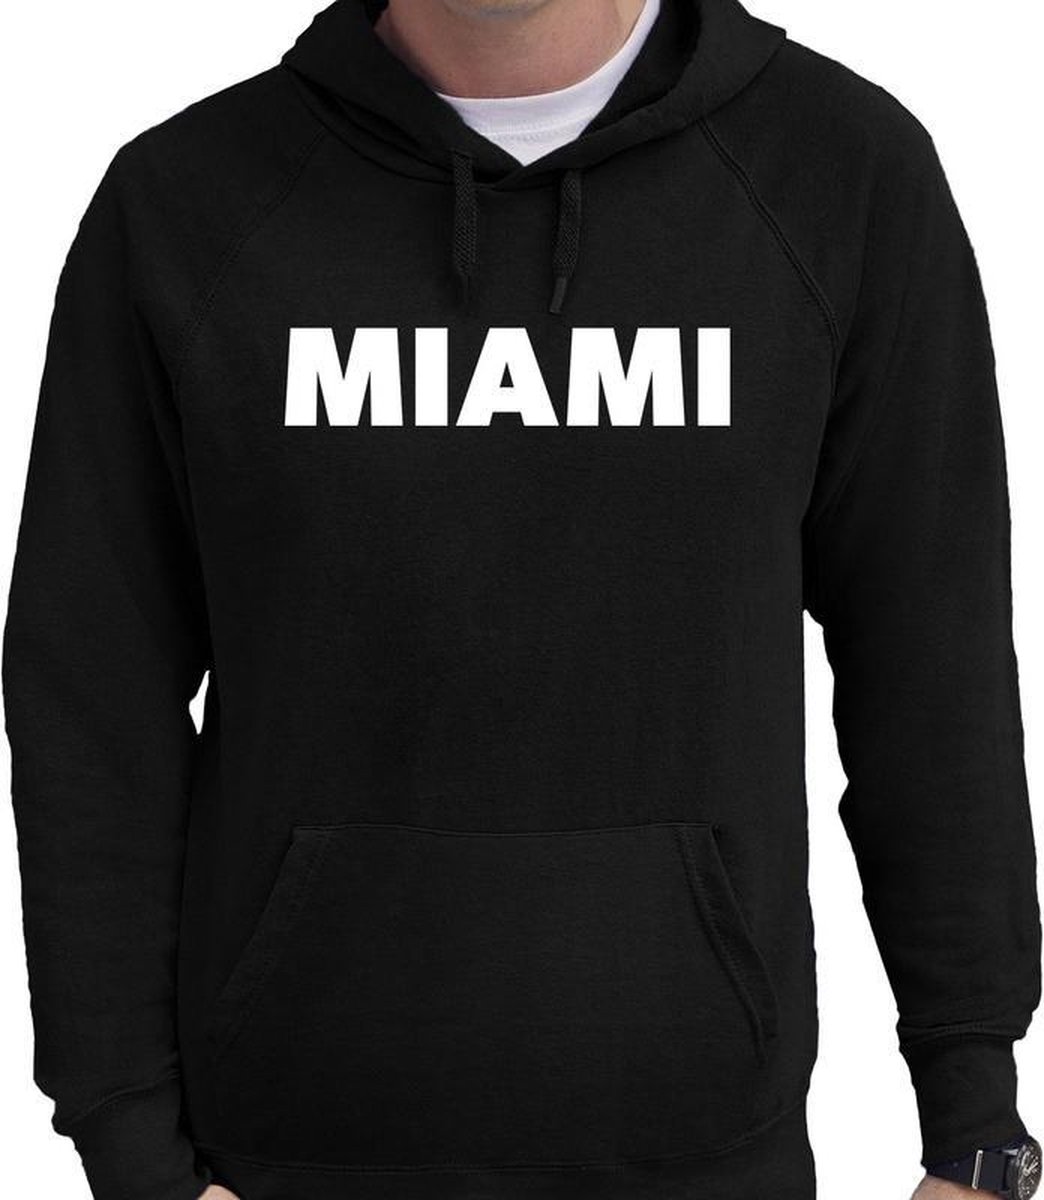 Afbeelding van product Bellatio Decorations  Miami tekst hoodie zwart voor heren - zwarte Miami sweater/trui met capuchon L  - maat L